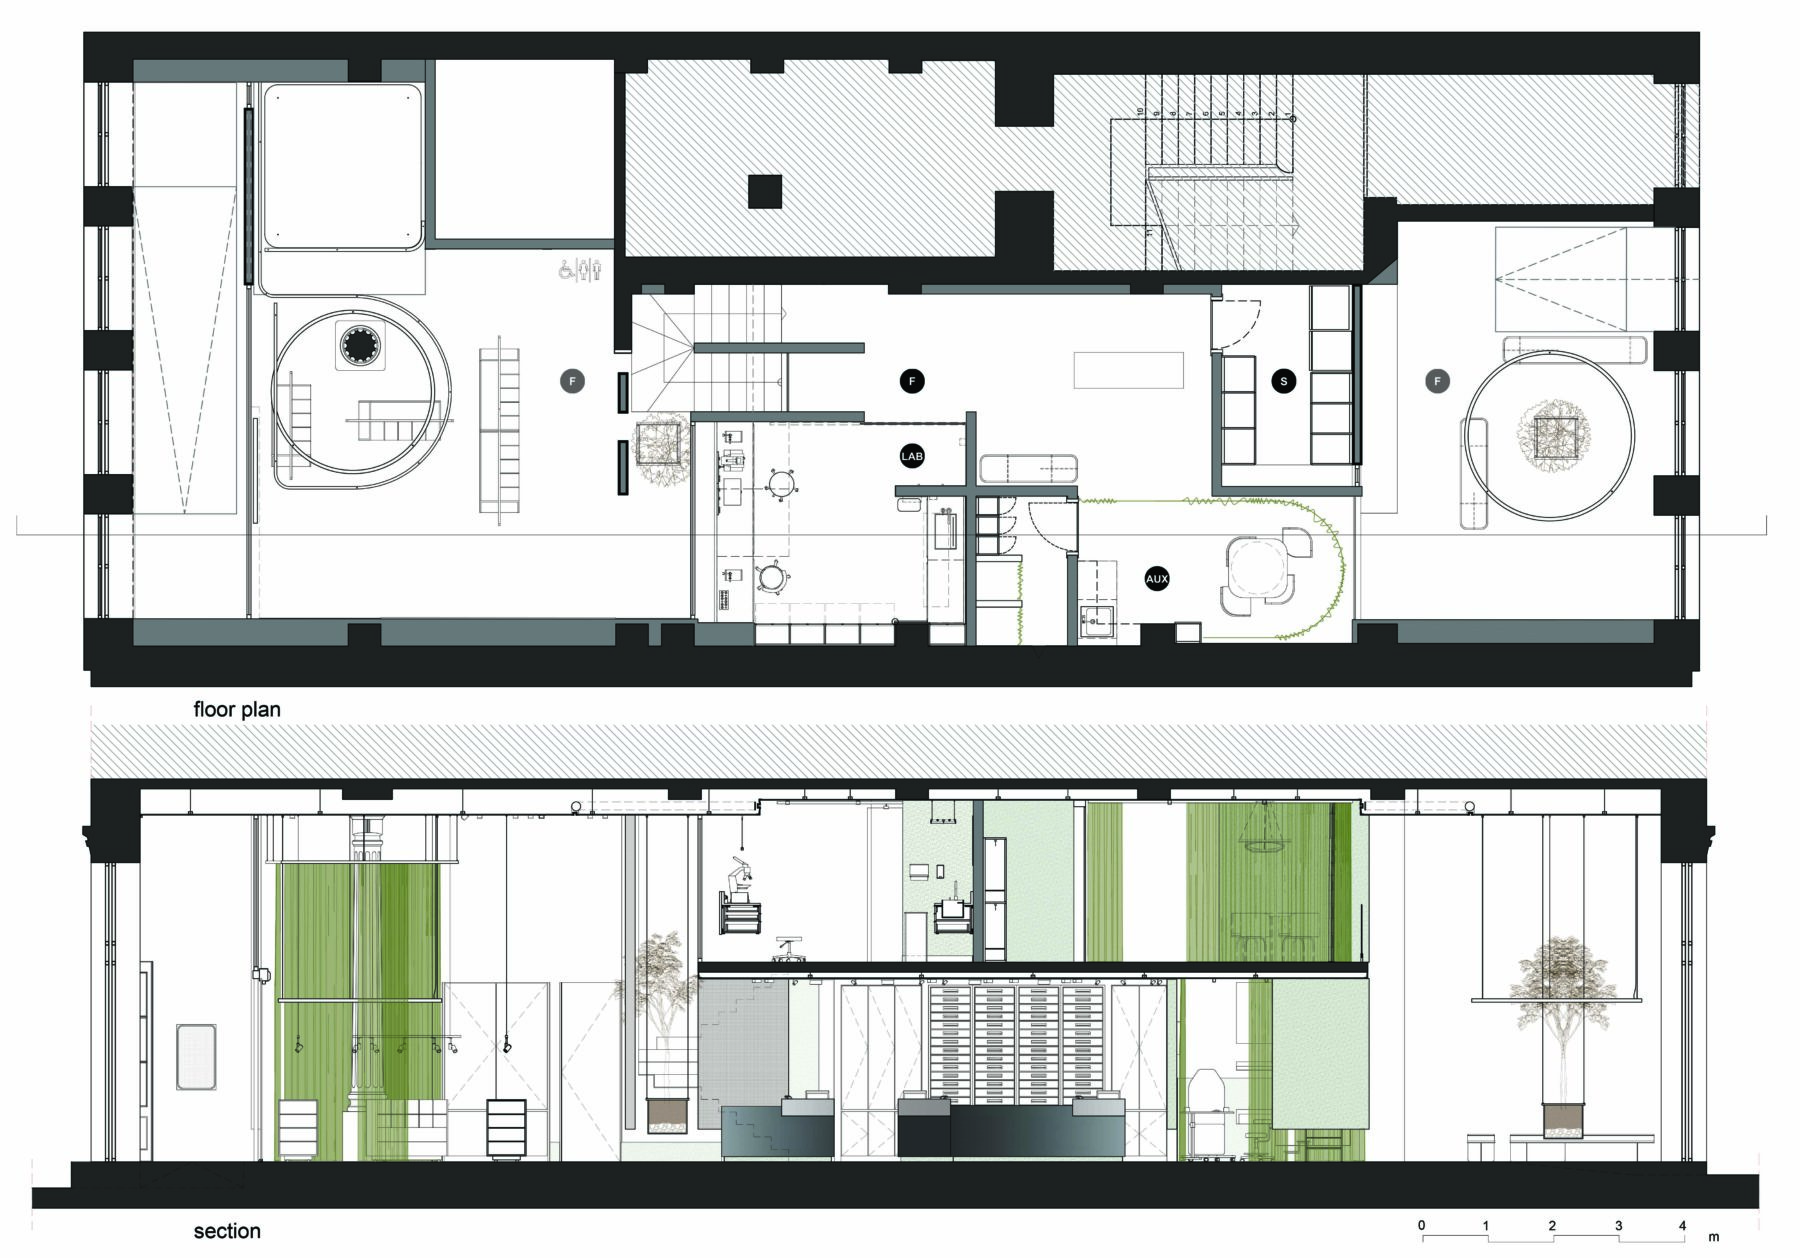 Archisearch Έπαινος συμμετοχής στο Φοιτητικό Αρχιτεκτονικό Διαγωνισμό Ιδεών «ΦΑΡΜΑΚΕΙΟ 2030», για την πρόταση των Aμπαδιωτάκης Πέτρος και Γιαννακοπούλου Νικολέτα